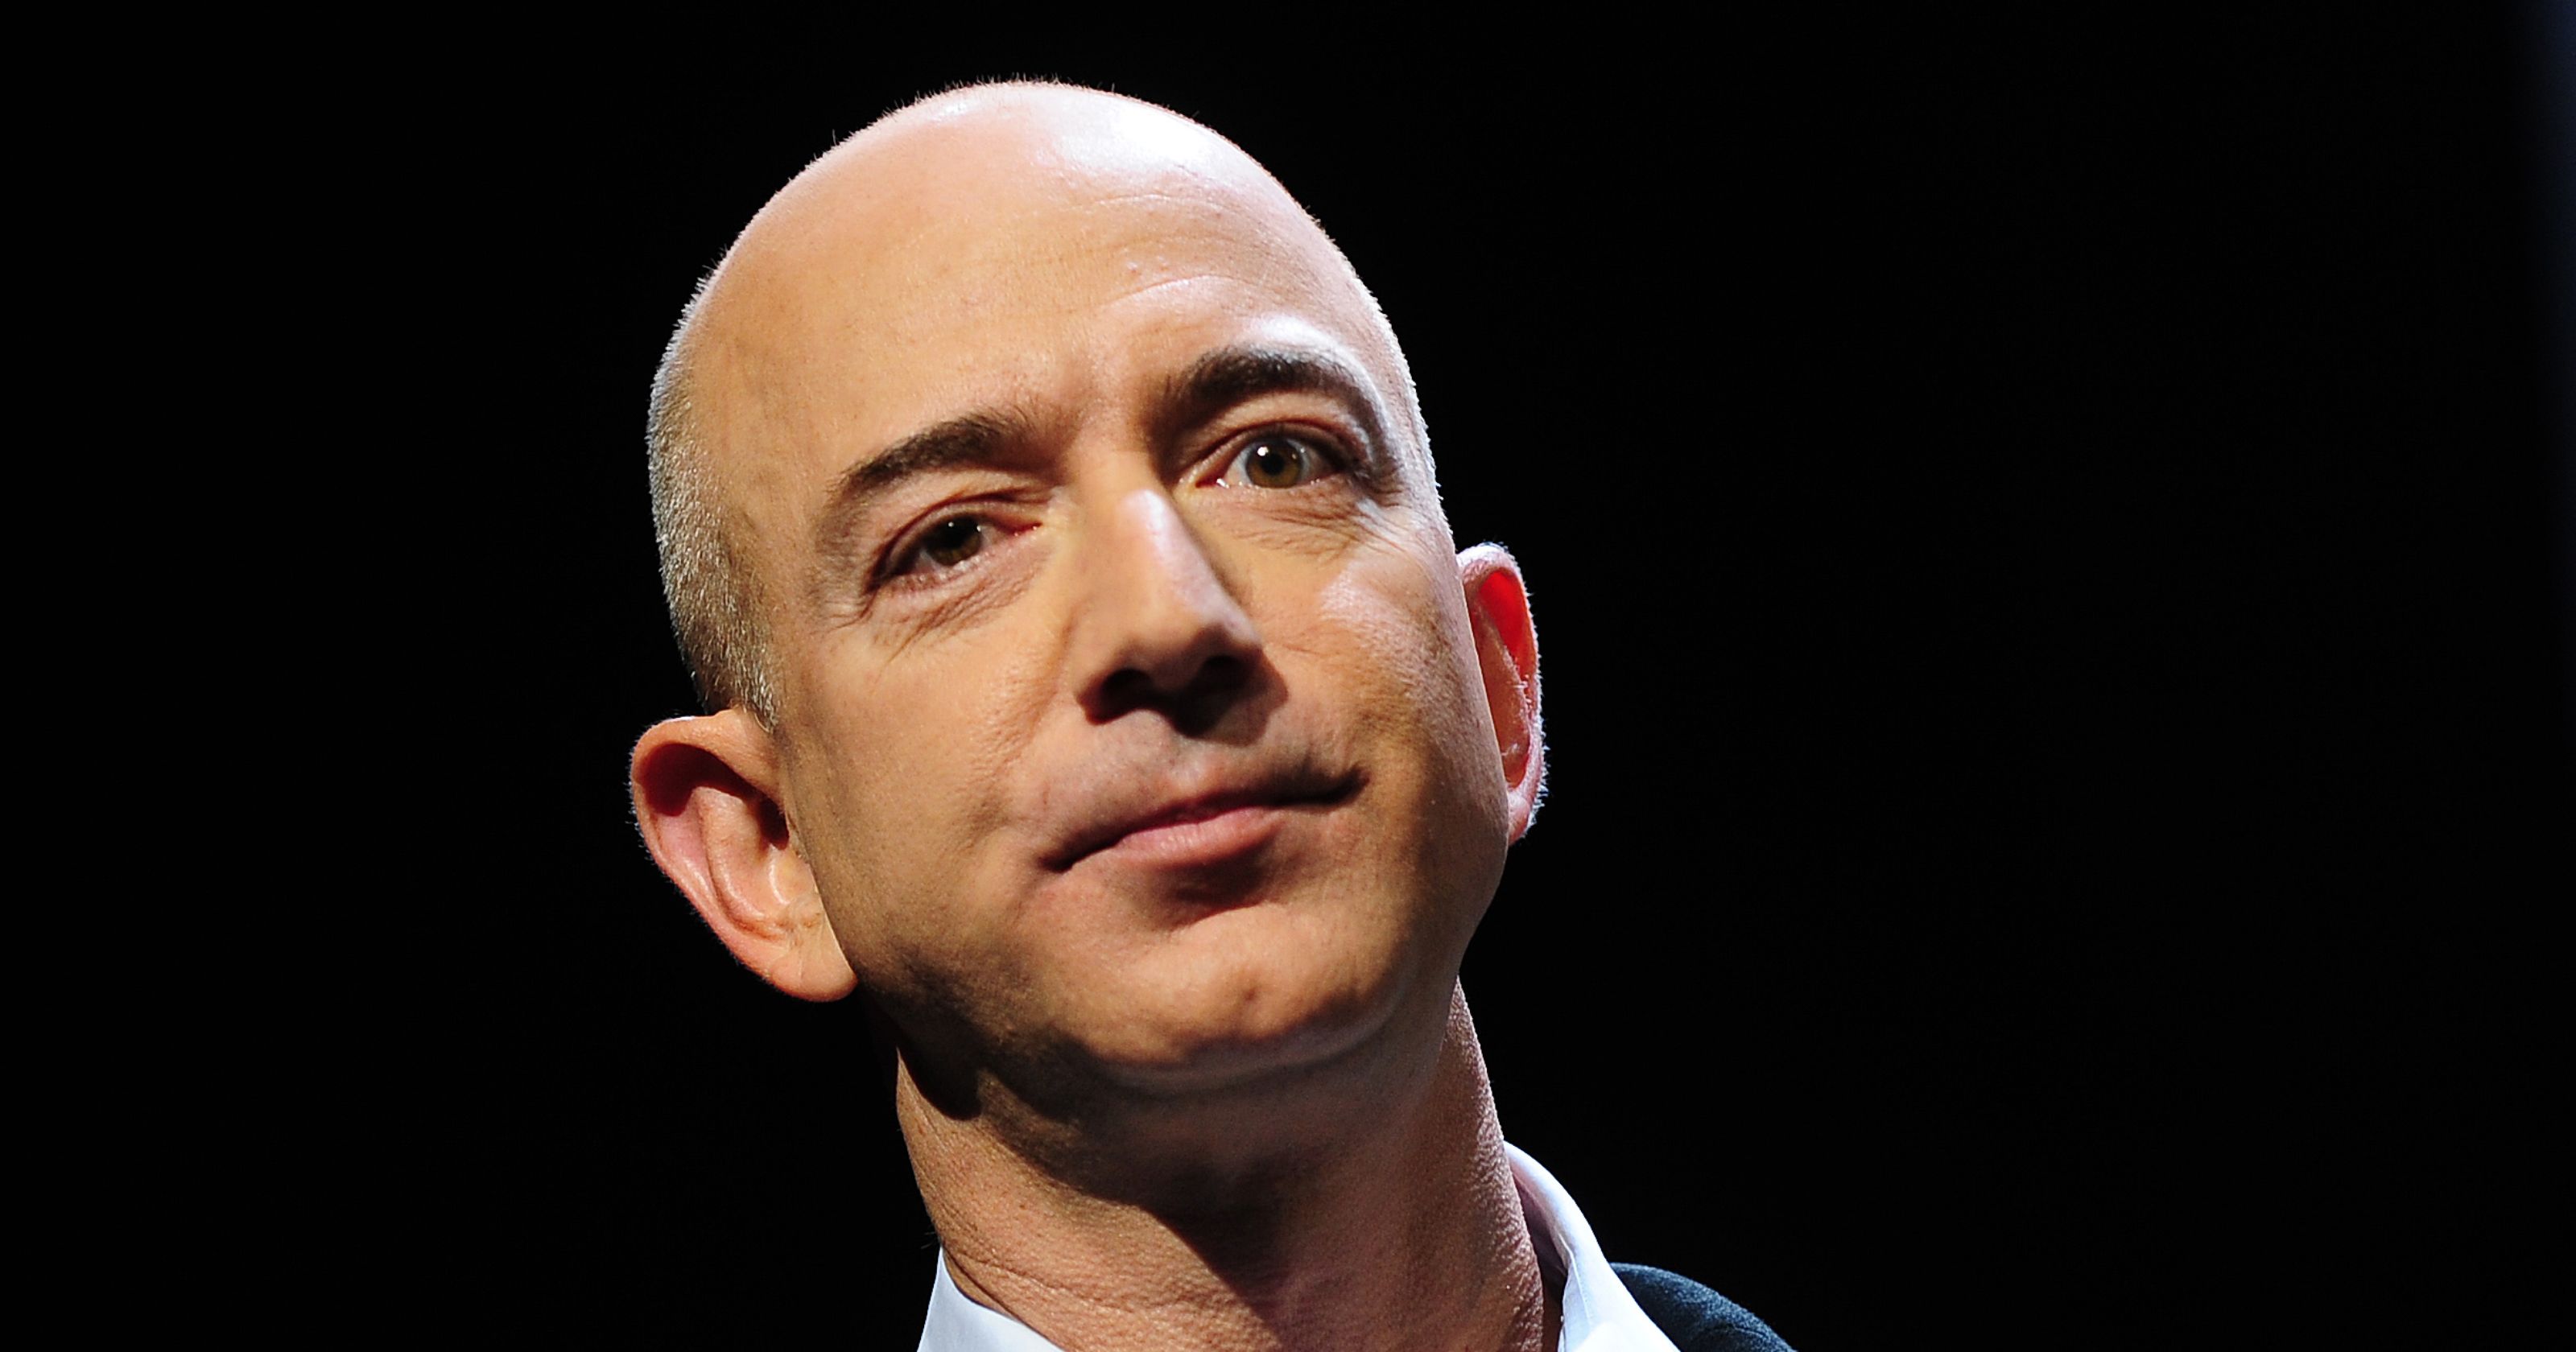 Tỷ phú Jeff Bezos đã giúp Amazon trở thành một trong những công ty hàng đầu thế giới, khiến Google lẫn Microsoft phải chùn bước. Ảnh: USA today